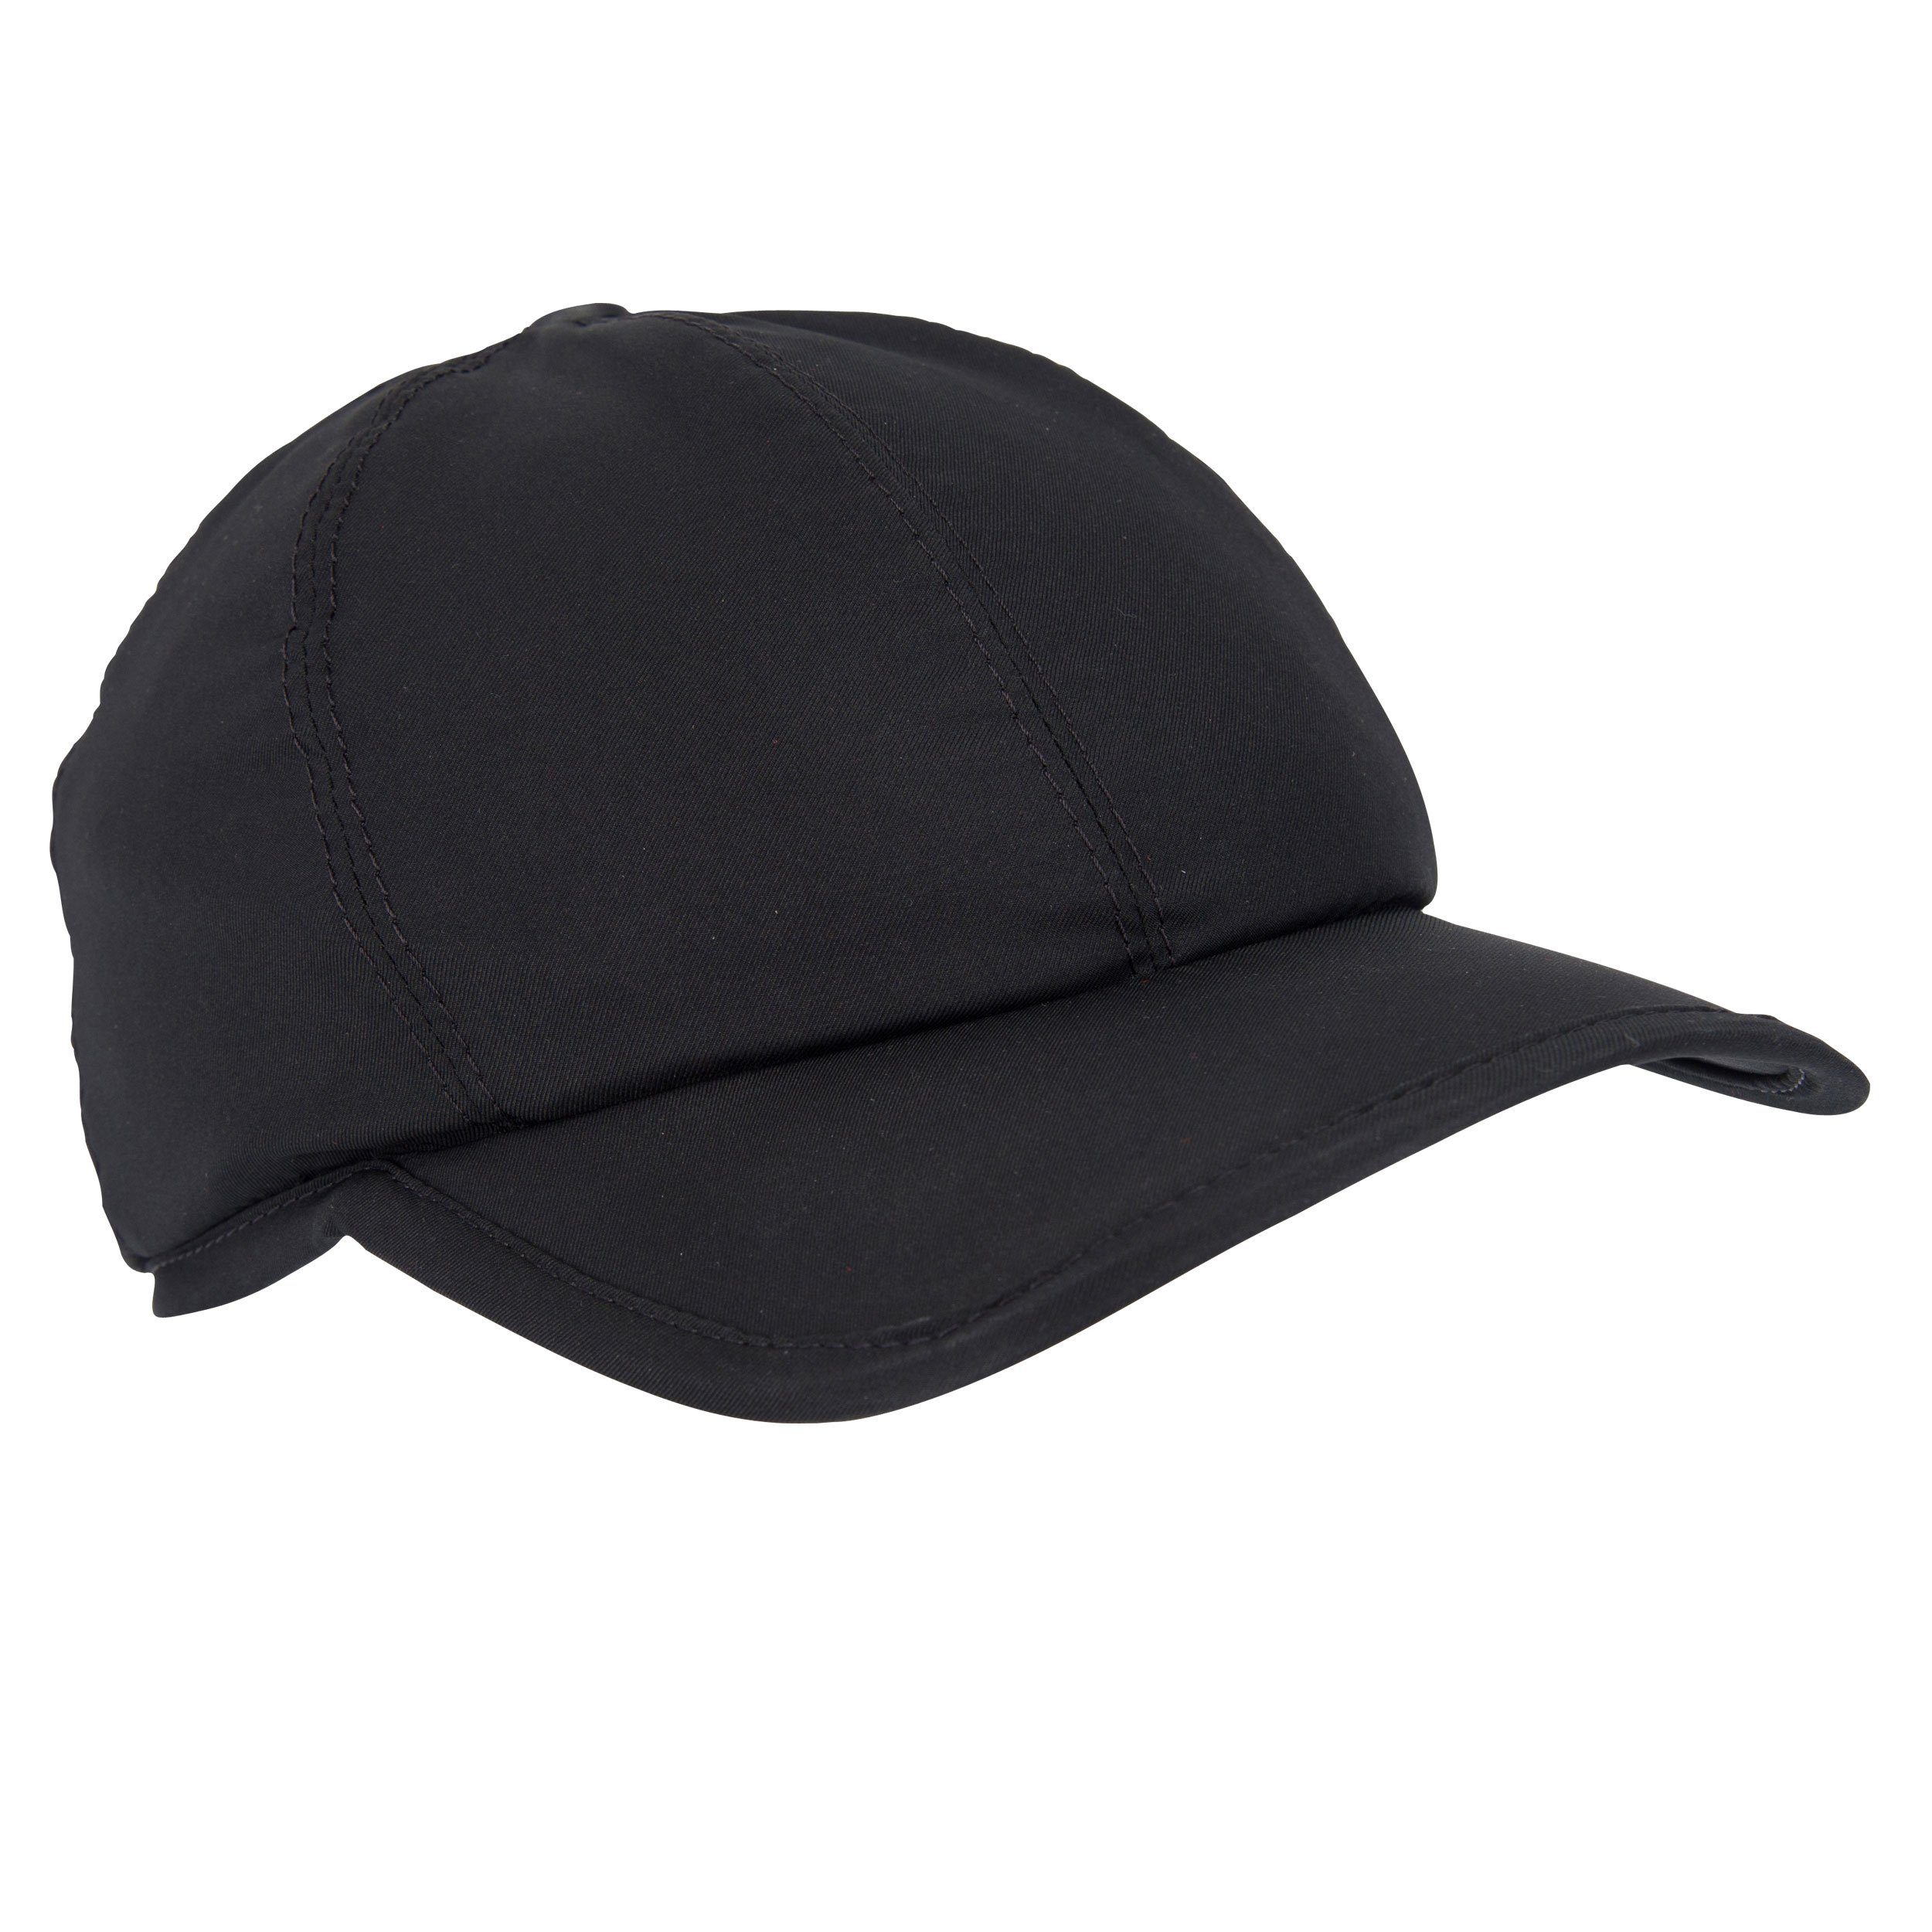 E.COOLINE Baseball Cap - aktiv kühlende Mütze - Kühlung durch Aktivierung mit Wasser Klimaanlage zum Anziehen